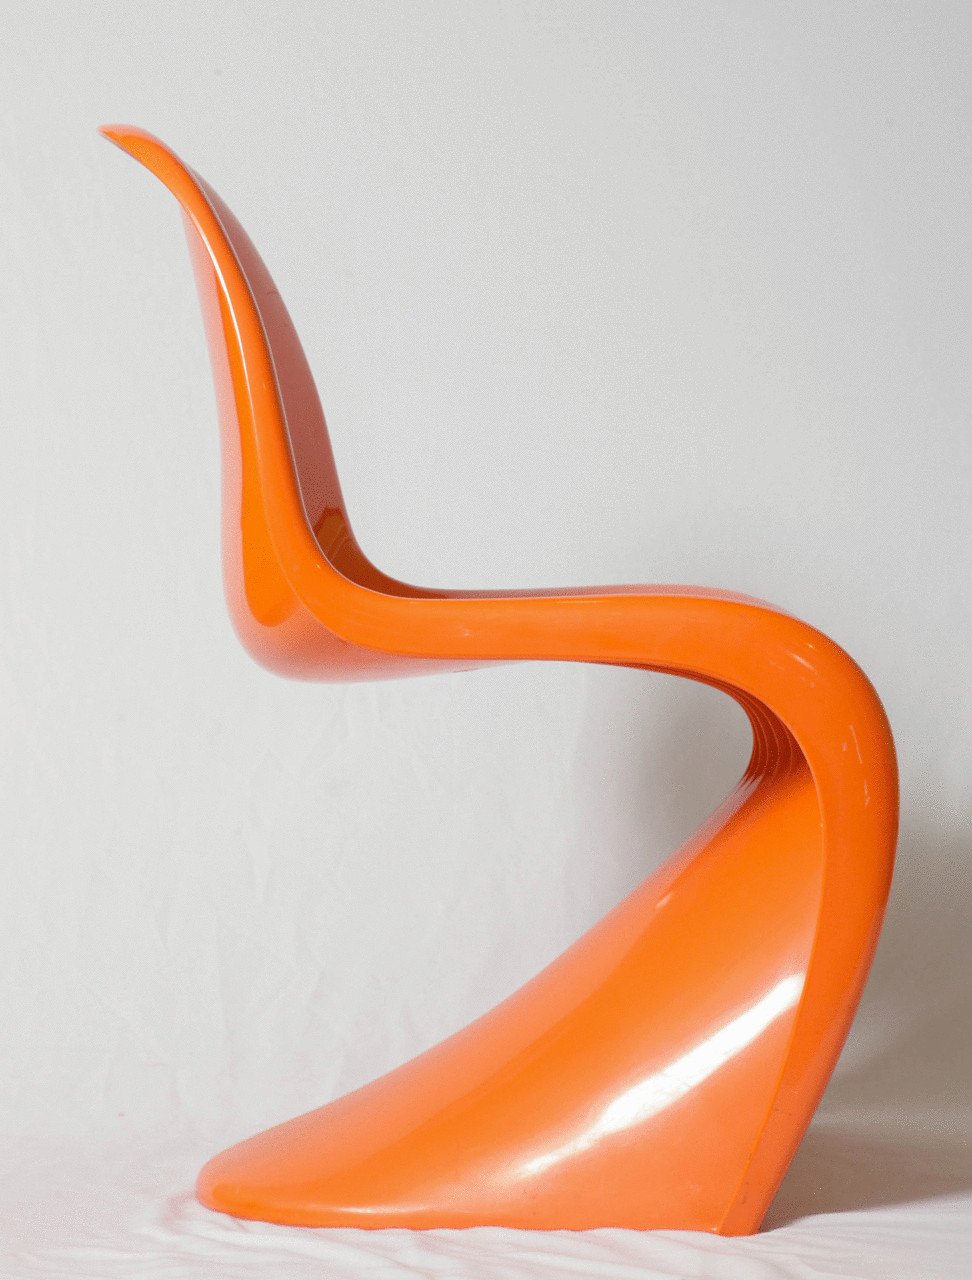 Дизайнер Герман Миллер создал модный стул из безопасного стекловолокна